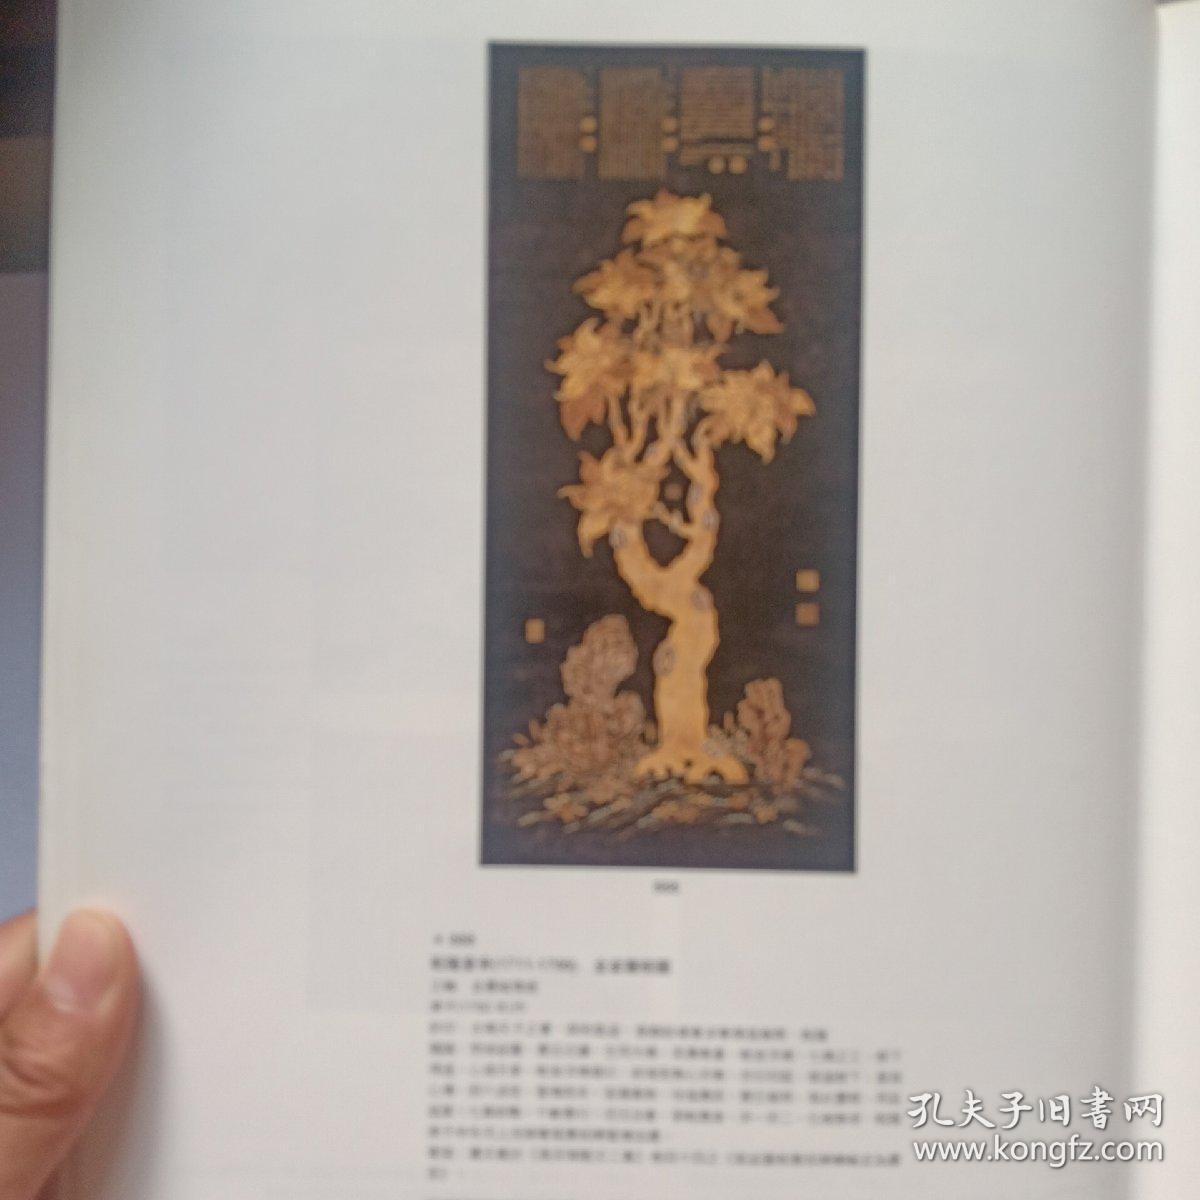 中国嘉德古代书画2000秋季拍卖